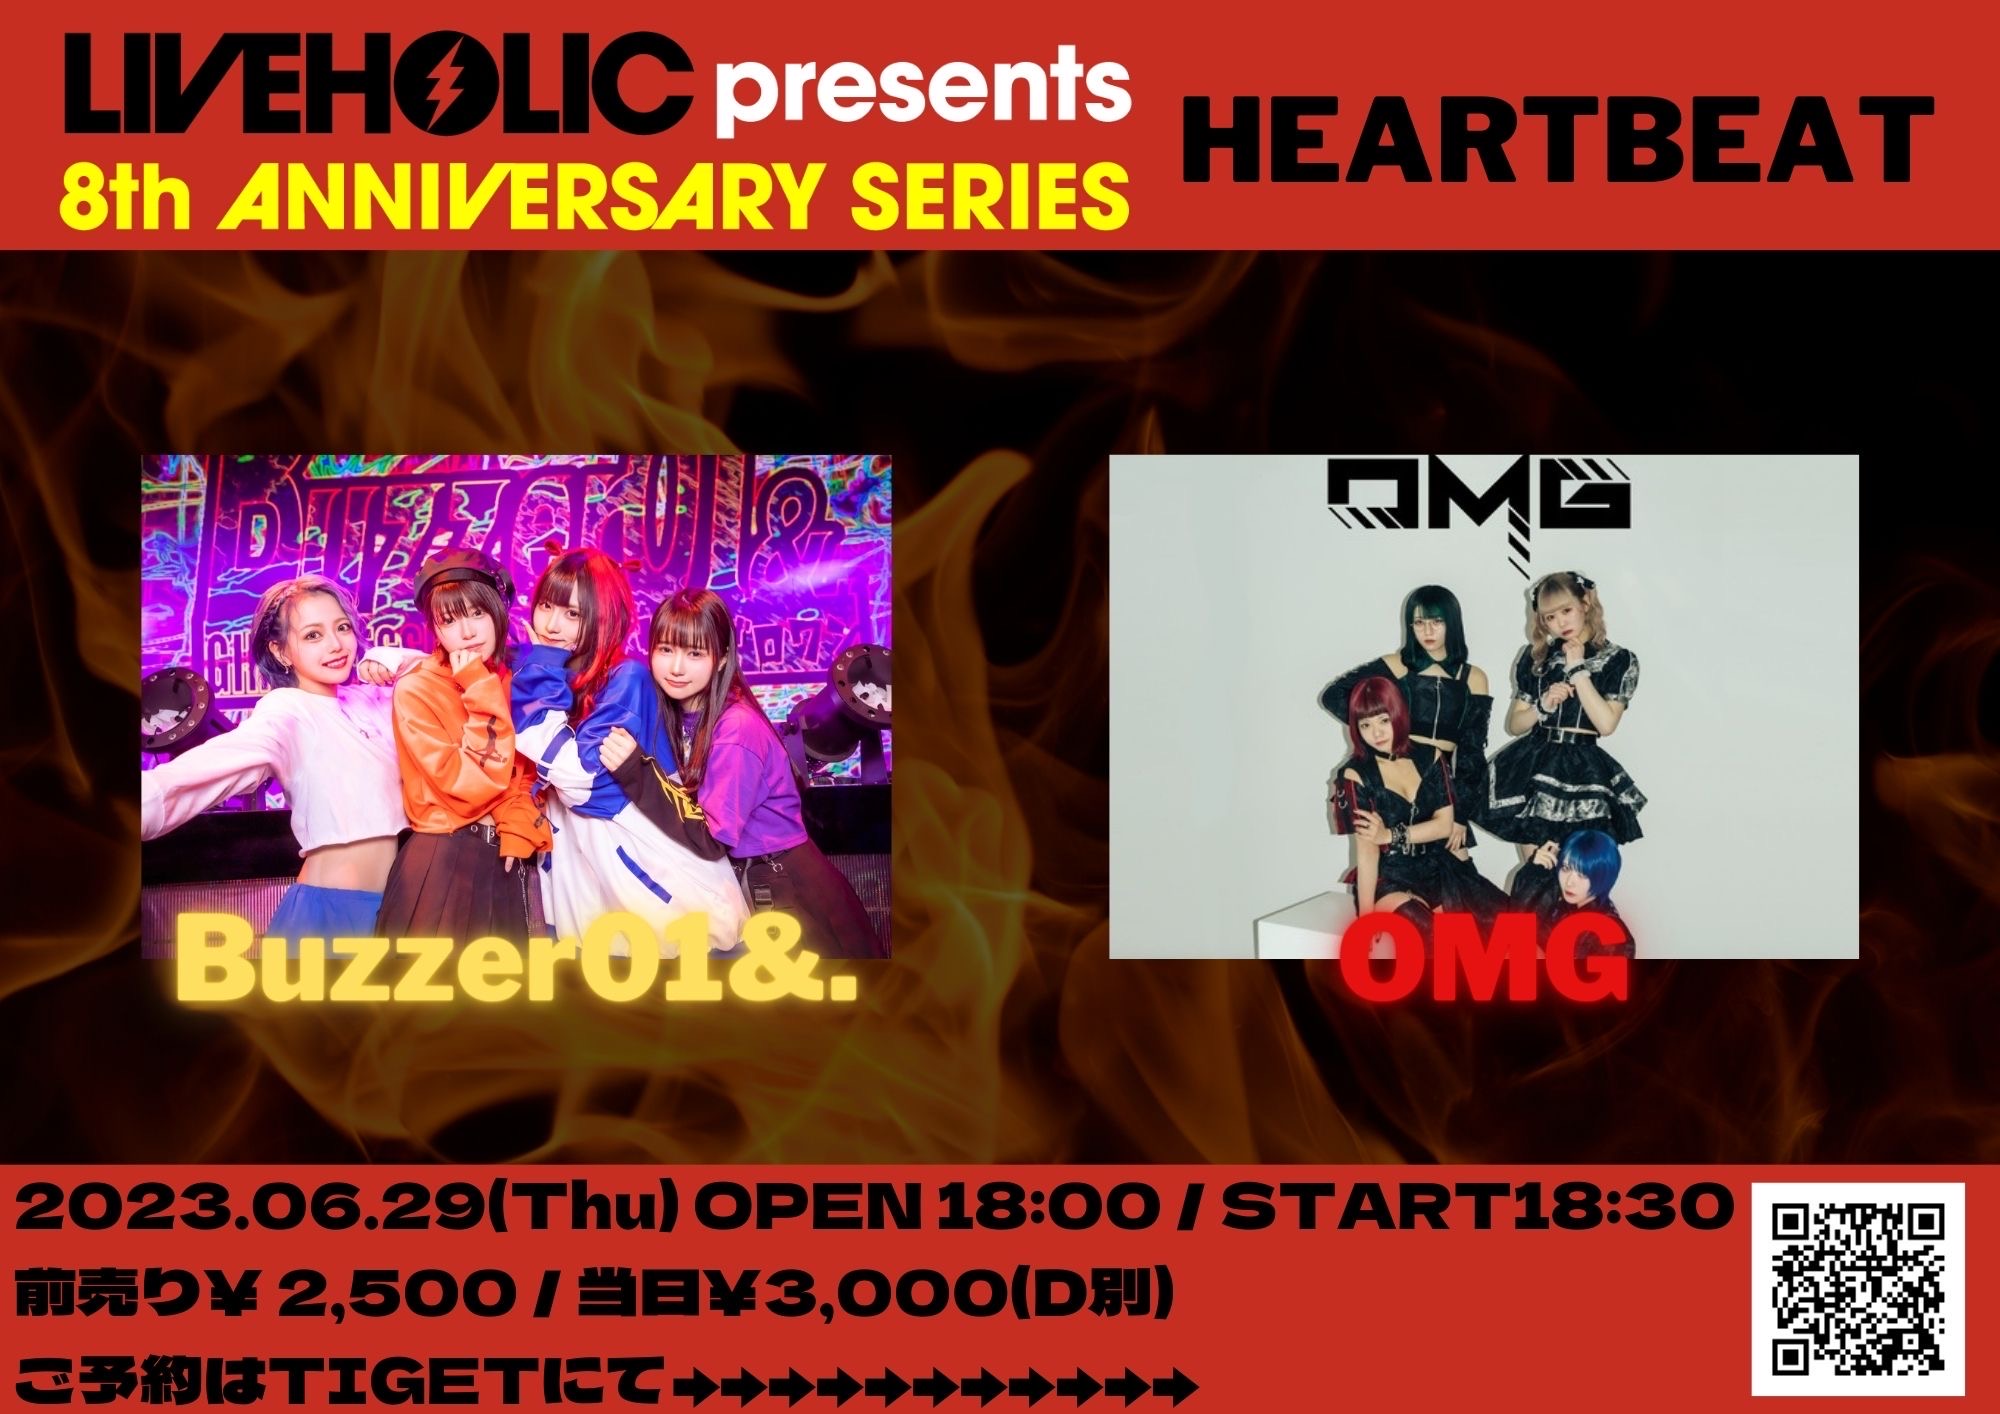 星井あおサポート出演公演(Buzzer01&.)「LIVEHOLIC 8th Anniversaryseries〜Heart Beat〜」